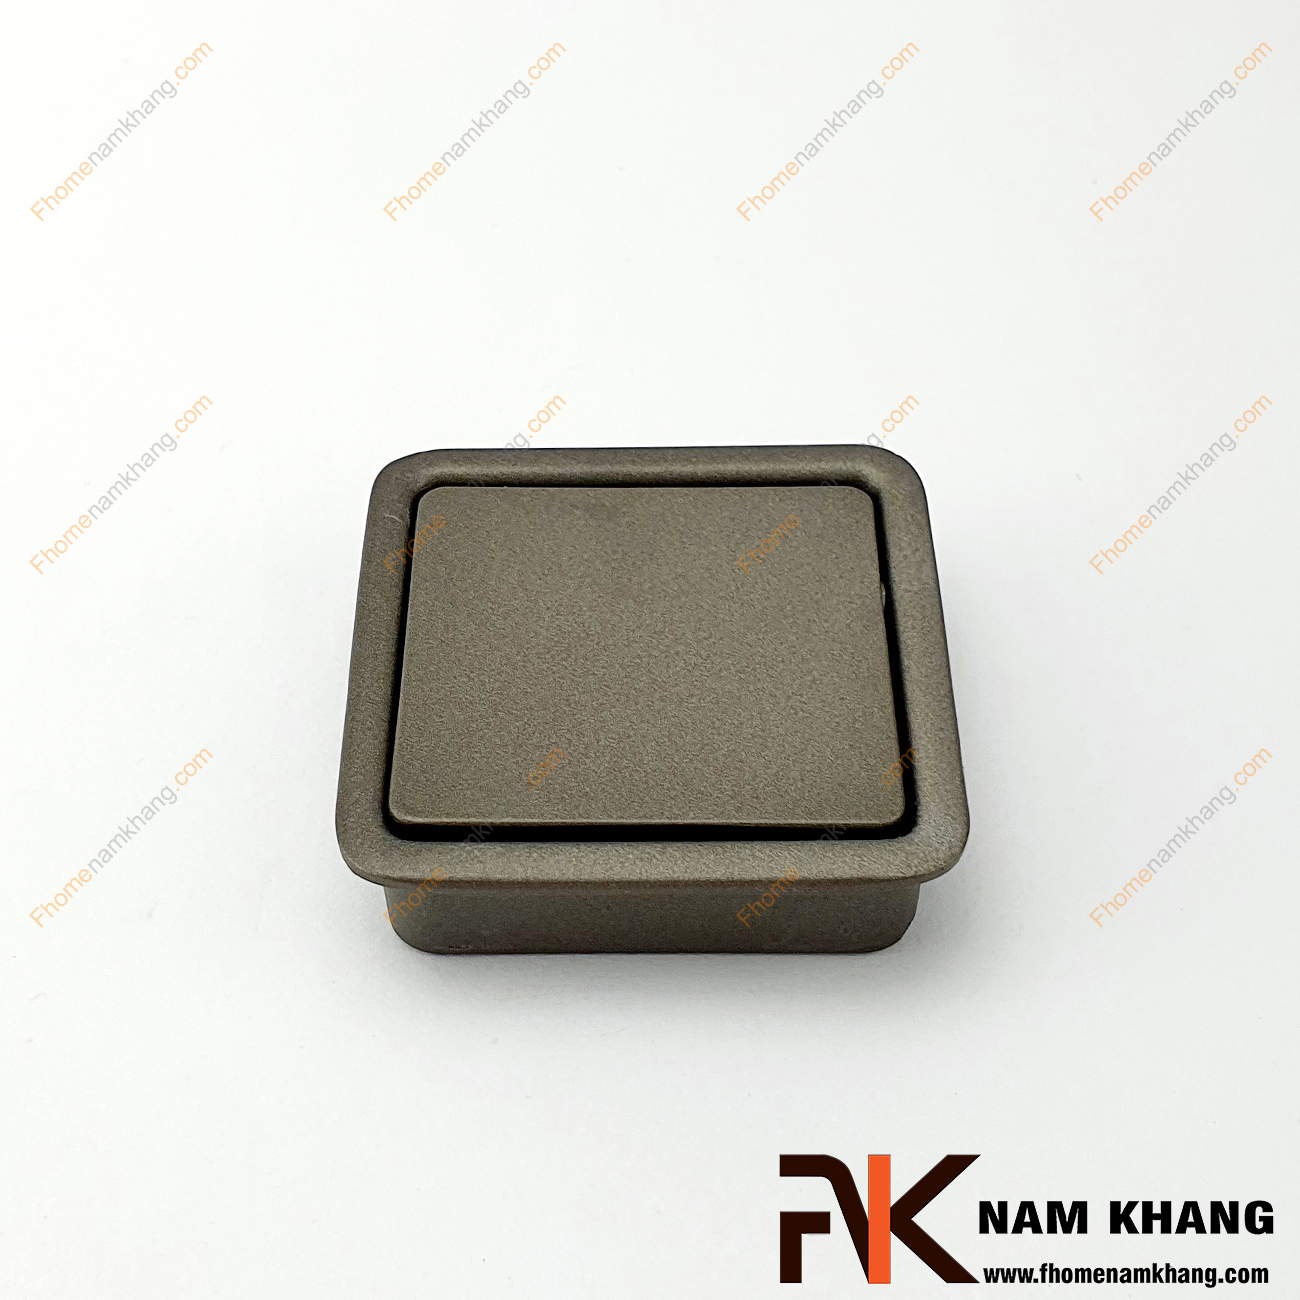 Núm âm tủ dạng vuông trơn màu xám NK237-X chuyên dùng cho các loại tủ đặt ở những nơi có không gian hạn chế hoặc dùng để nâng cao tính thẫm mỹ của sản phẩm